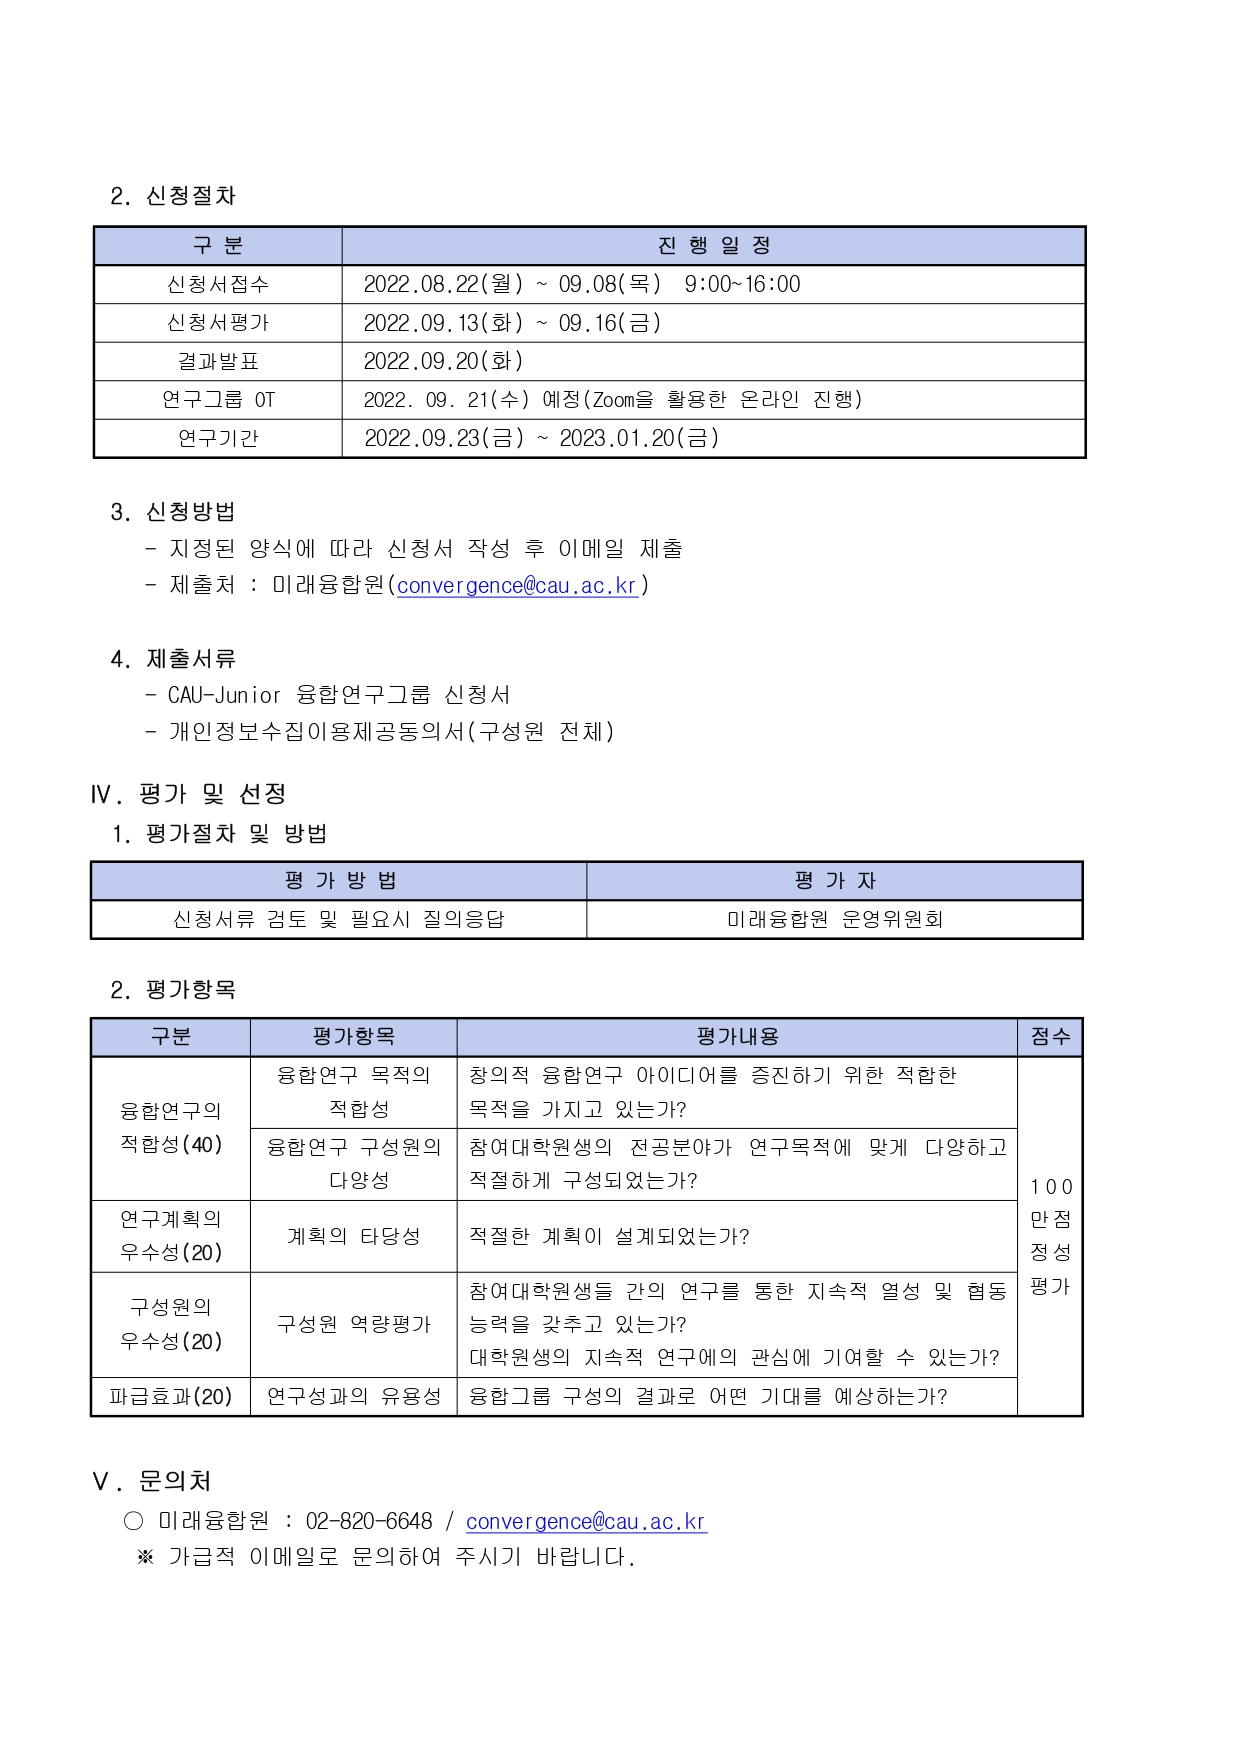 (붙임2)_2022 CAU-Junior 융합연구그룹 안내문.jpg